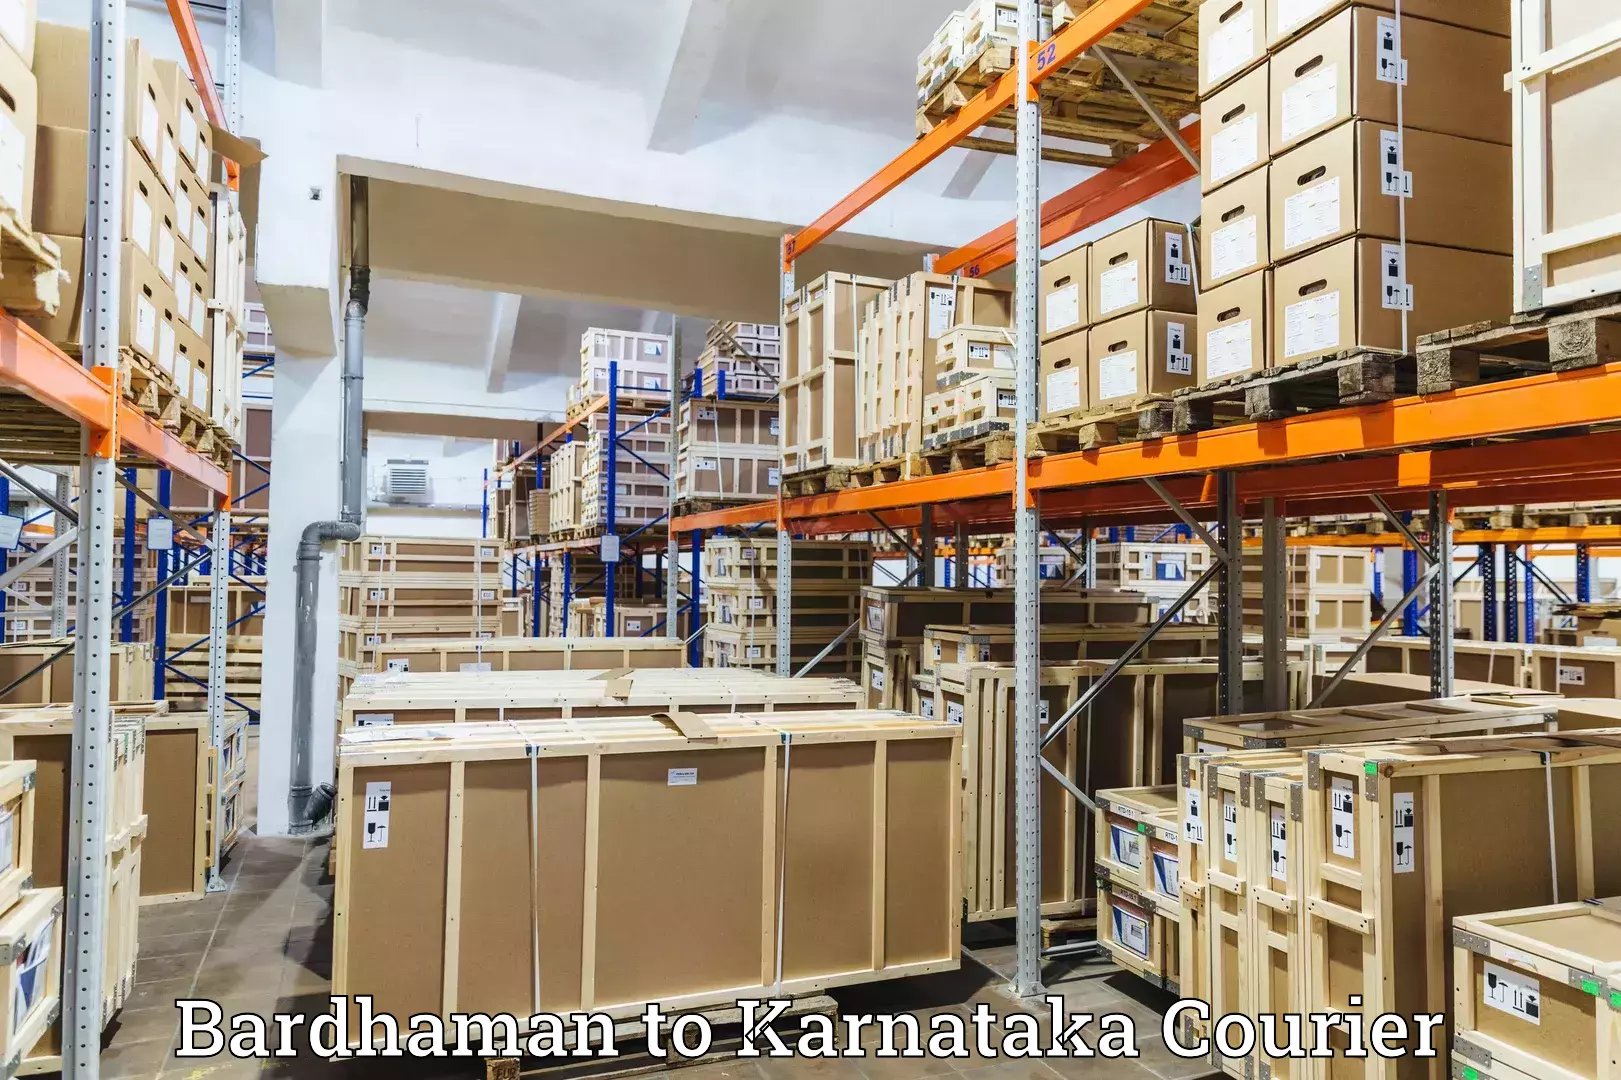 Pharmaceutical courier Bardhaman to Kora Tumkur